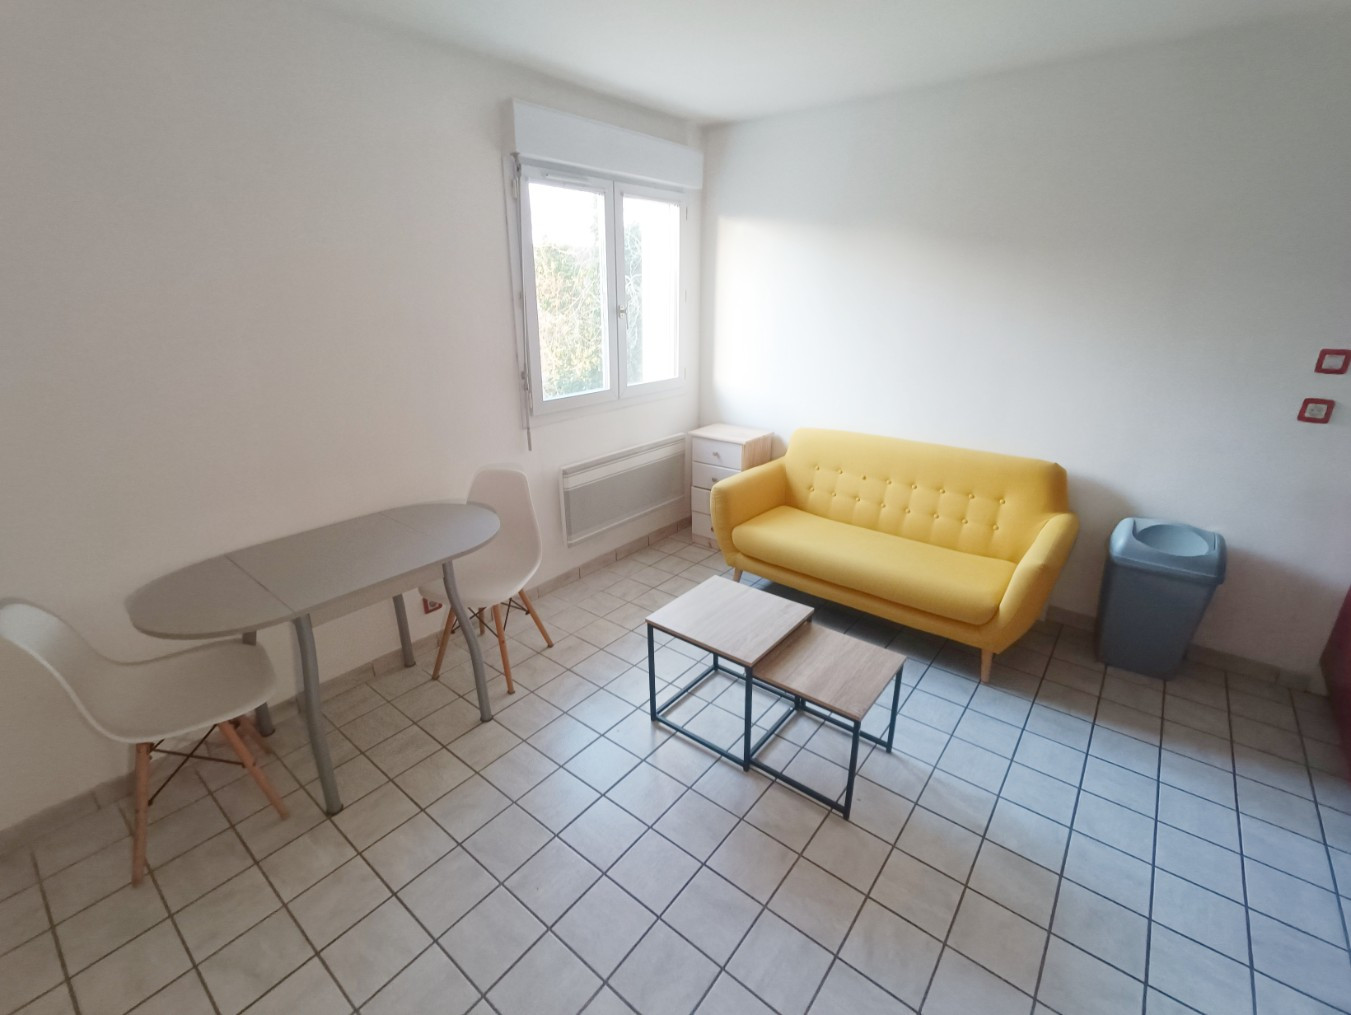 
                                                Location
                                                 Appartement duplex 1 chambre Amiens St-Honoré